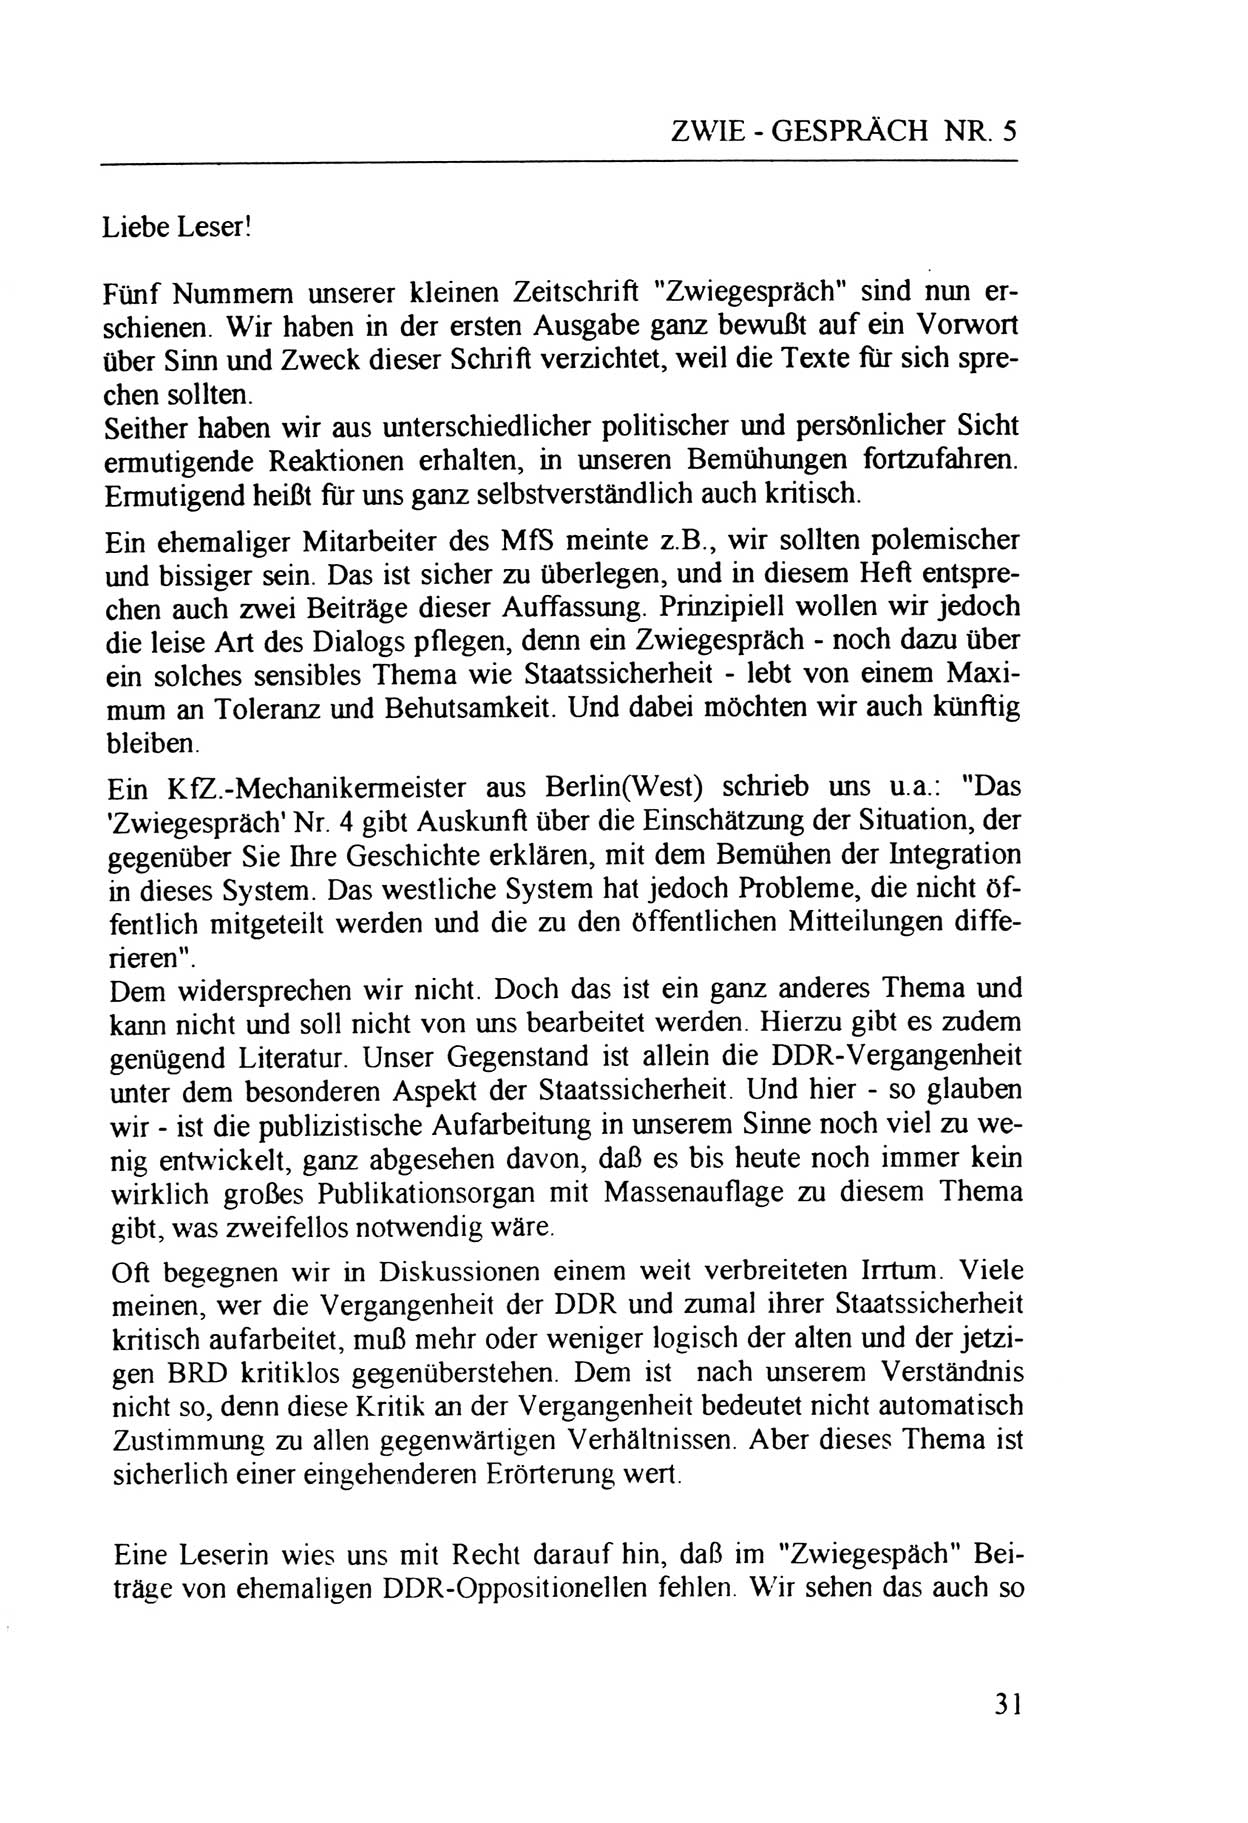 Zwie-Gespräch, Beiträge zur Aufarbeitung der Staatssicherheits-Vergangenheit [Deutsche Demokratische Republik (DDR)], Ausgabe Nr. 5, Berlin 1991, Seite 31 (Zwie-Gespr. Ausg. 5 1991, S. 31)